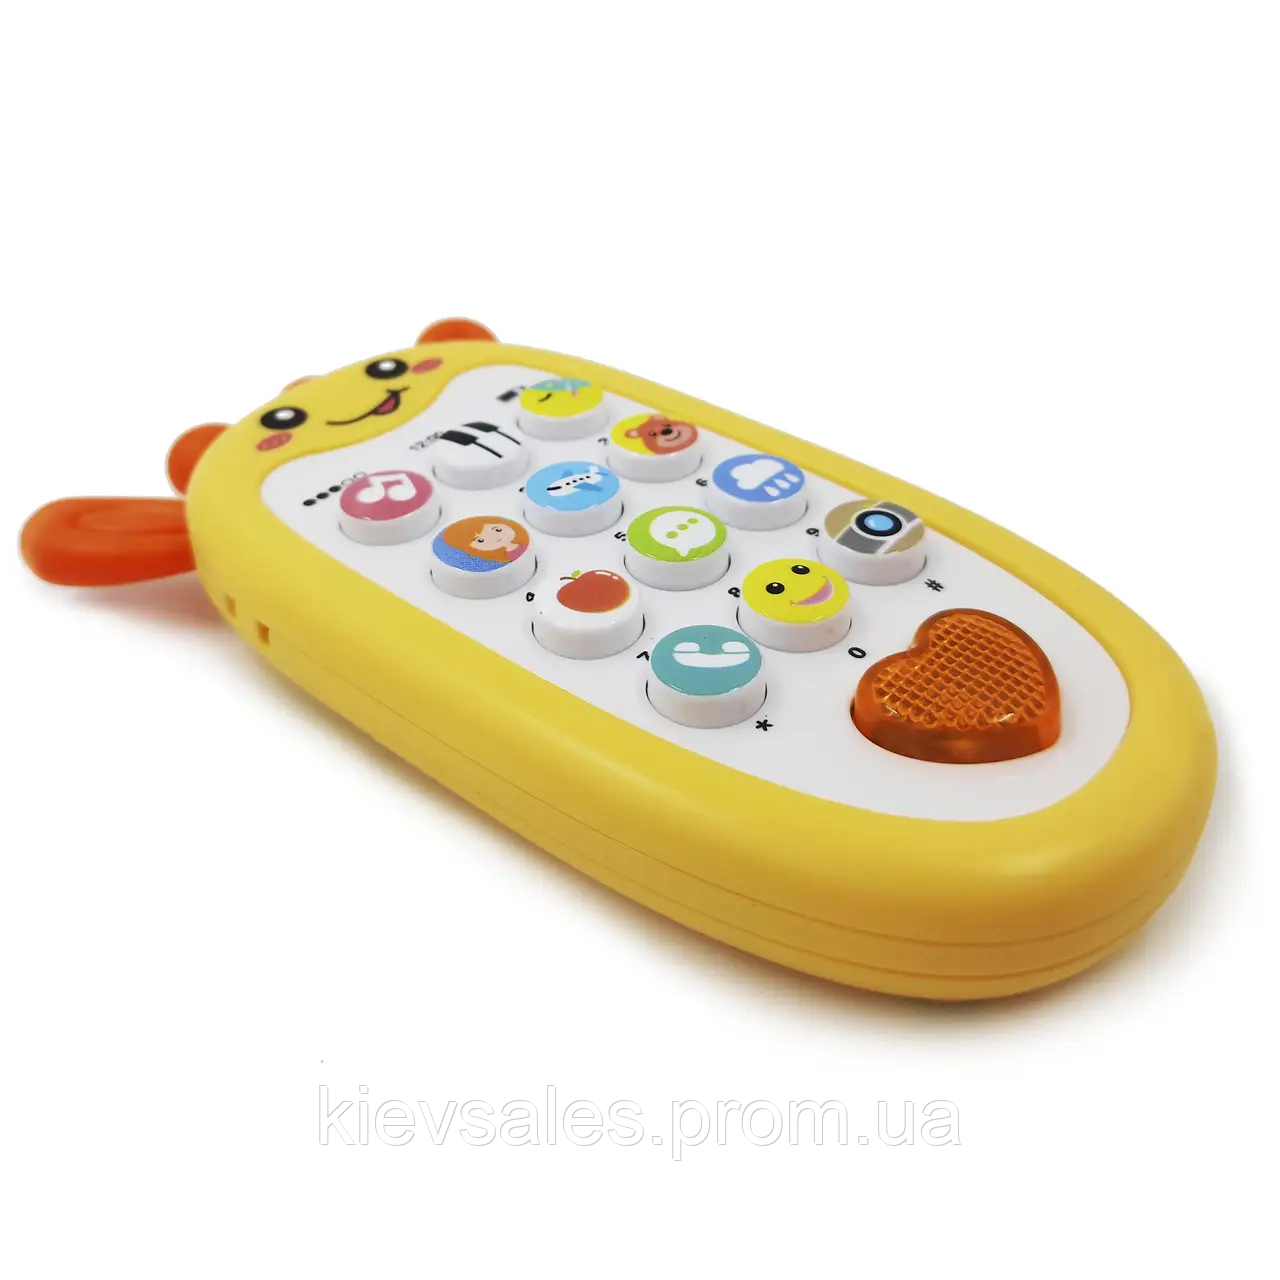 Дитячий іграшковий розвивальний мобільний телефон зі світловими та звуковими ефектами YG Toys Ж KS, код: 8368208